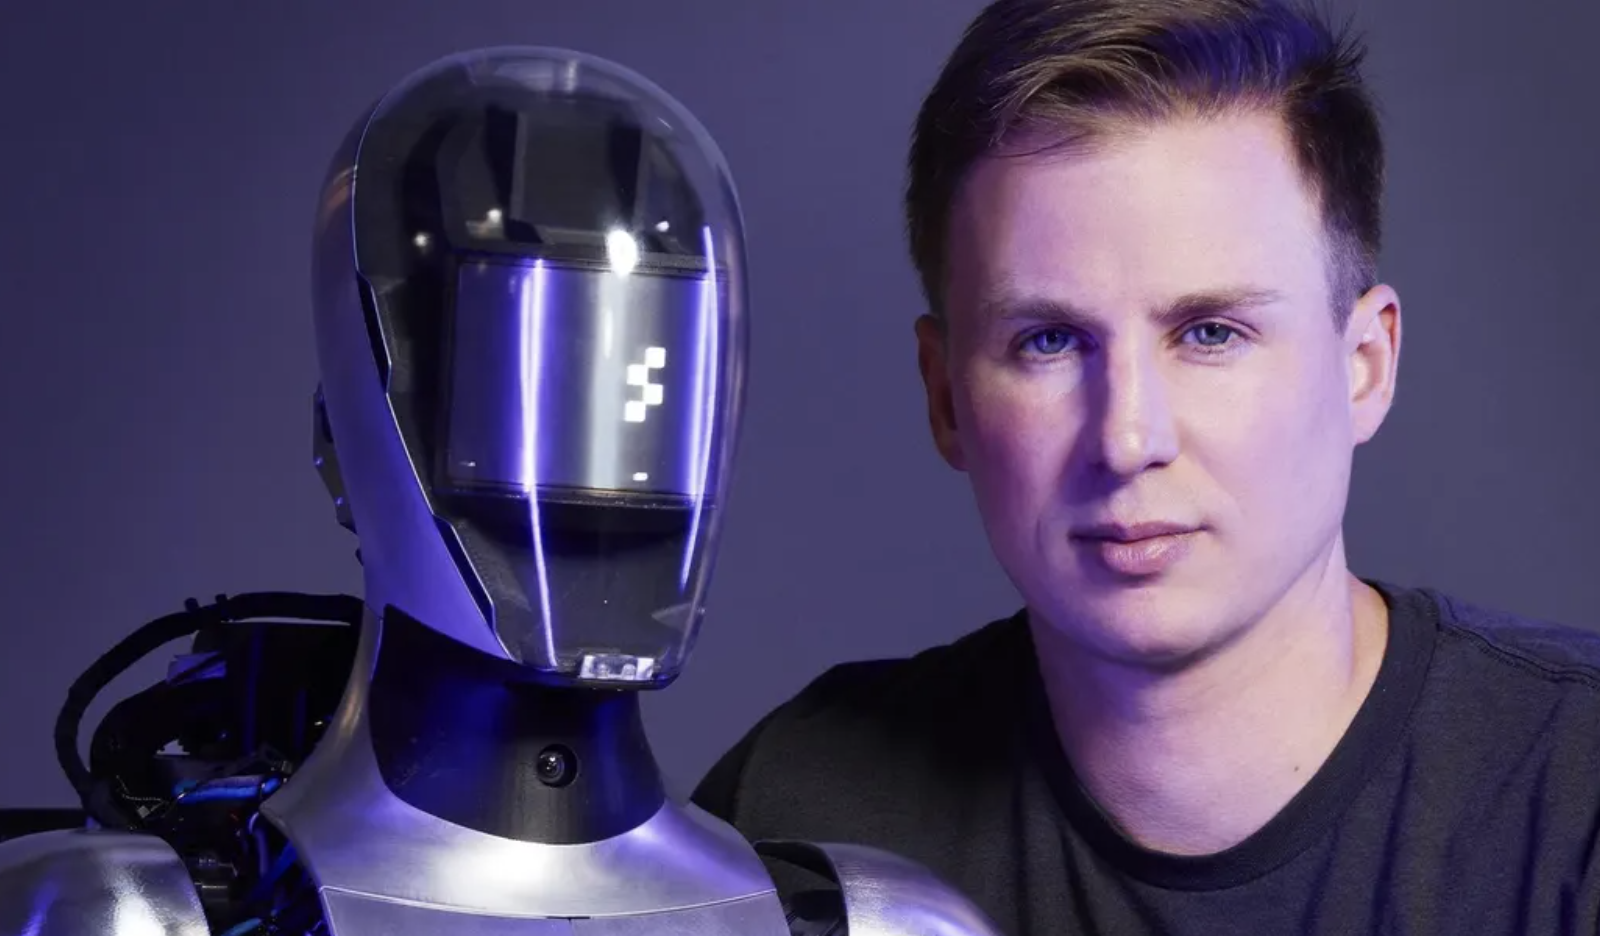 El fundador y director ejecutivo de Figure, Brett Adcock, quiere que los robots humanoides de su empresa cubran la escasez de empleos en las fábricas y realicen trabajos que no son seguros para los humanos. Y algún día, saca tu basura y hazte café. CODY PICKENS PARA FORBES